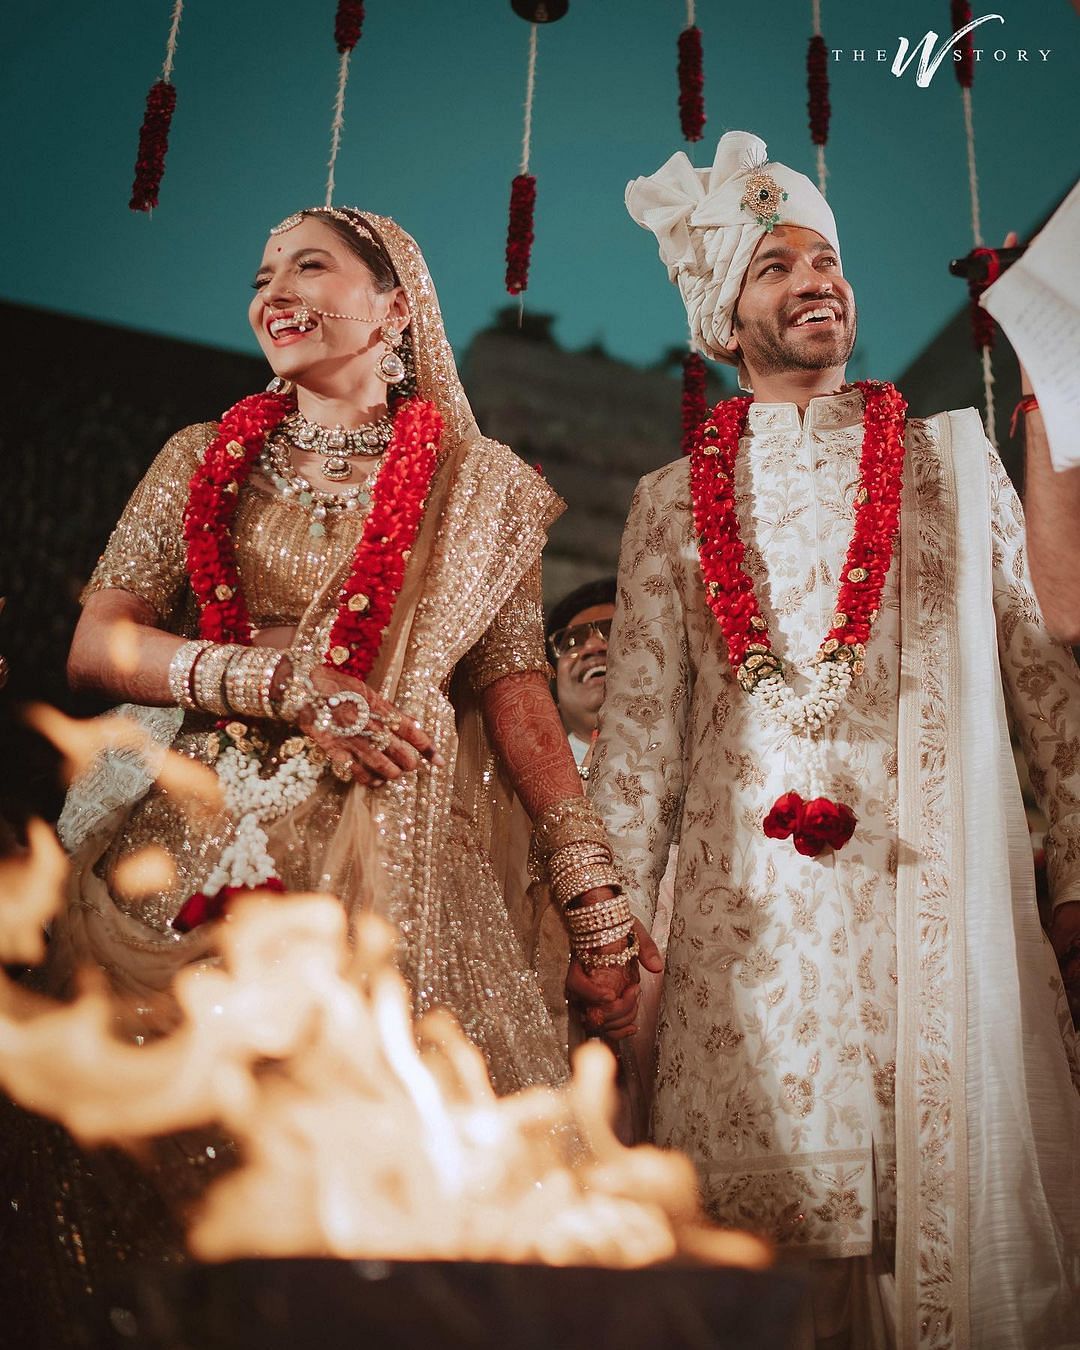 अंकिता लोखंडे ने 14 जून को मुंबई के एक होटल में अपने बॉयफ्रेंड विक्की जैन से शादी की.